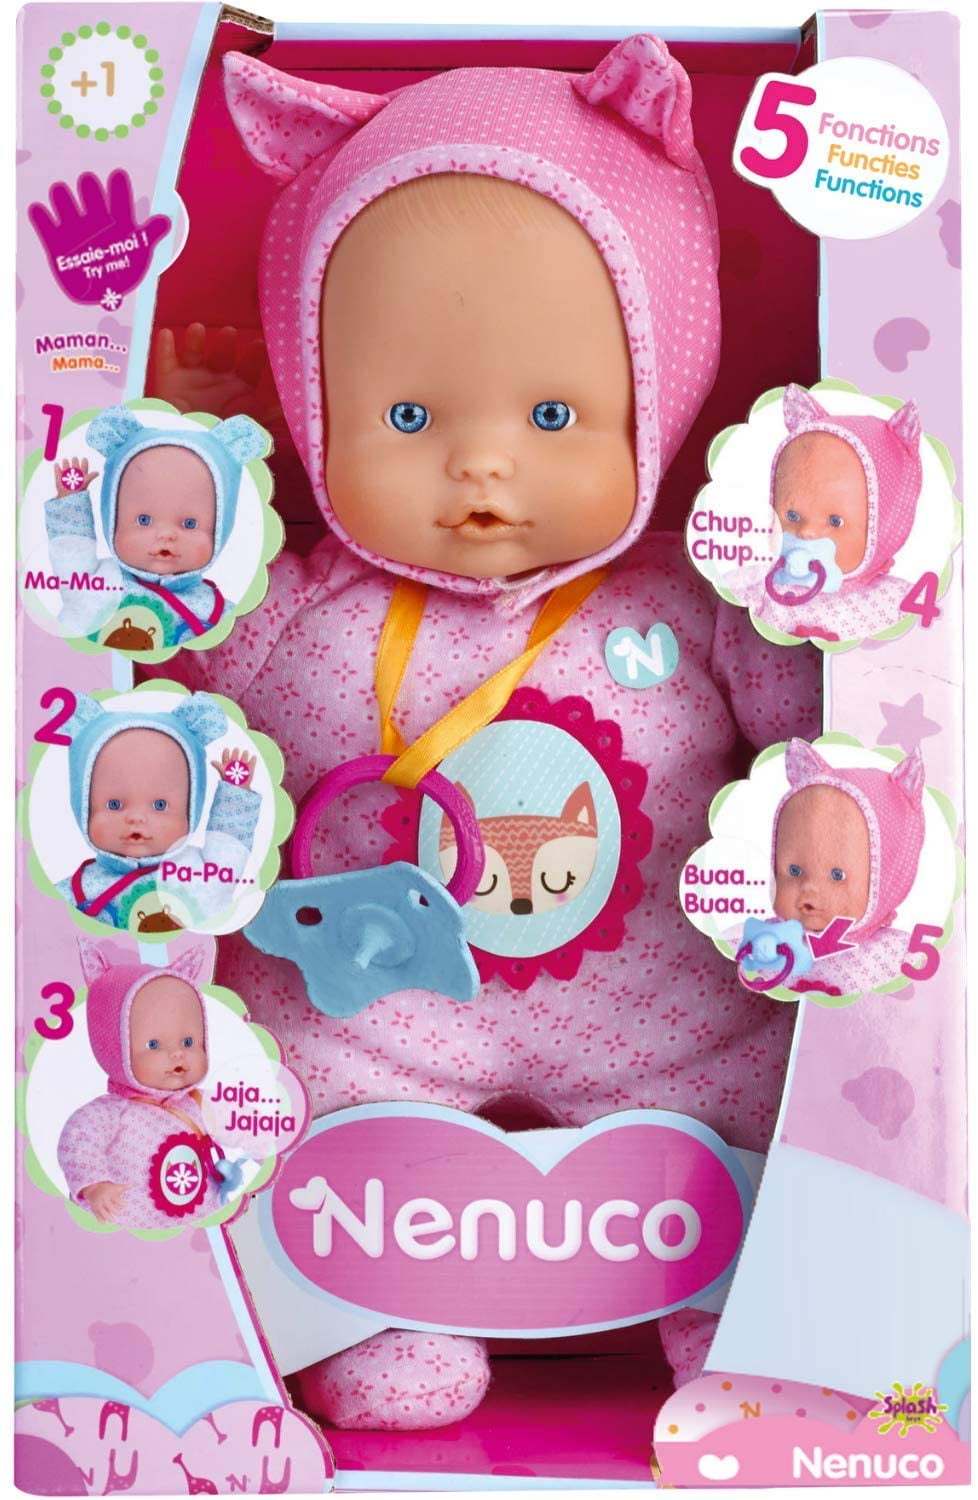 Clothes Doll Nenuco, Accessories Nenuco Doll